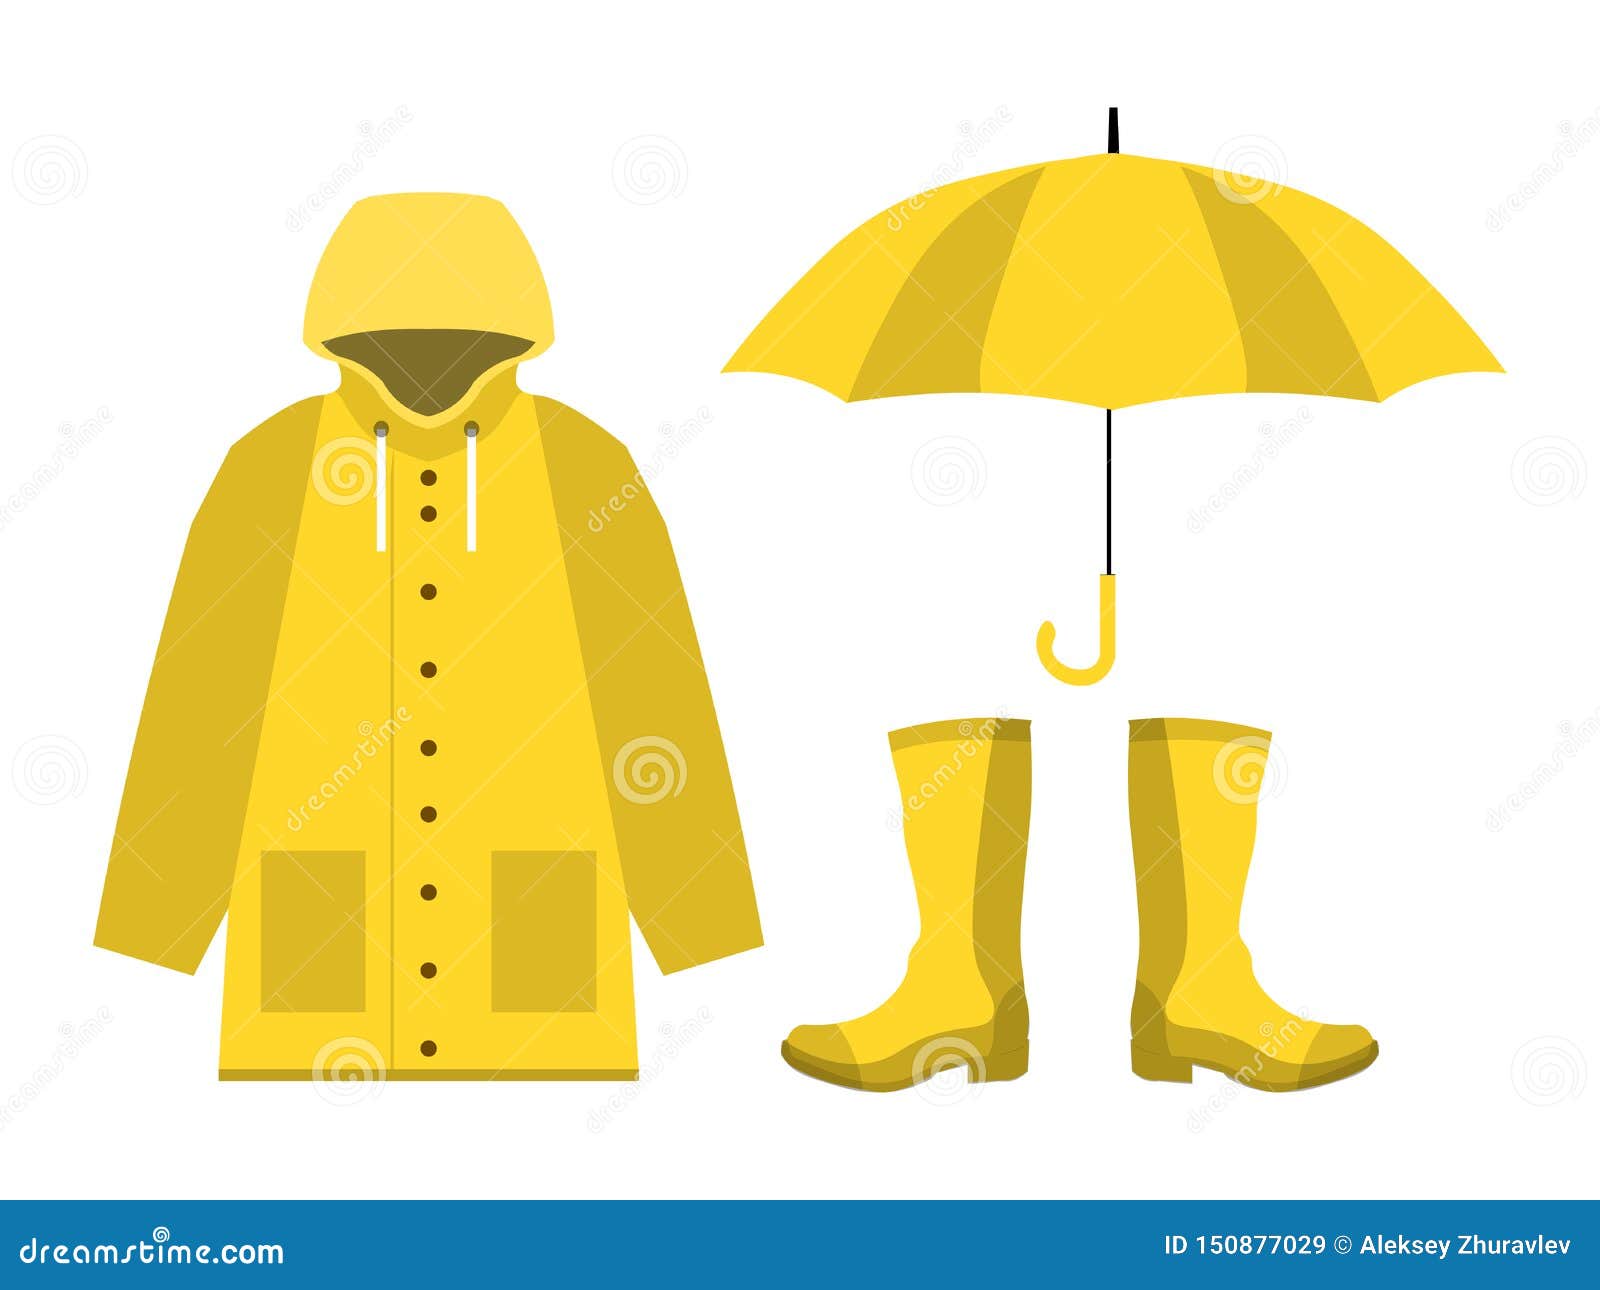 Raincoat Stock Illustrations – 7,119 Raincoat Stock Illustrations, Vectors  & Clipart - Dreamstime